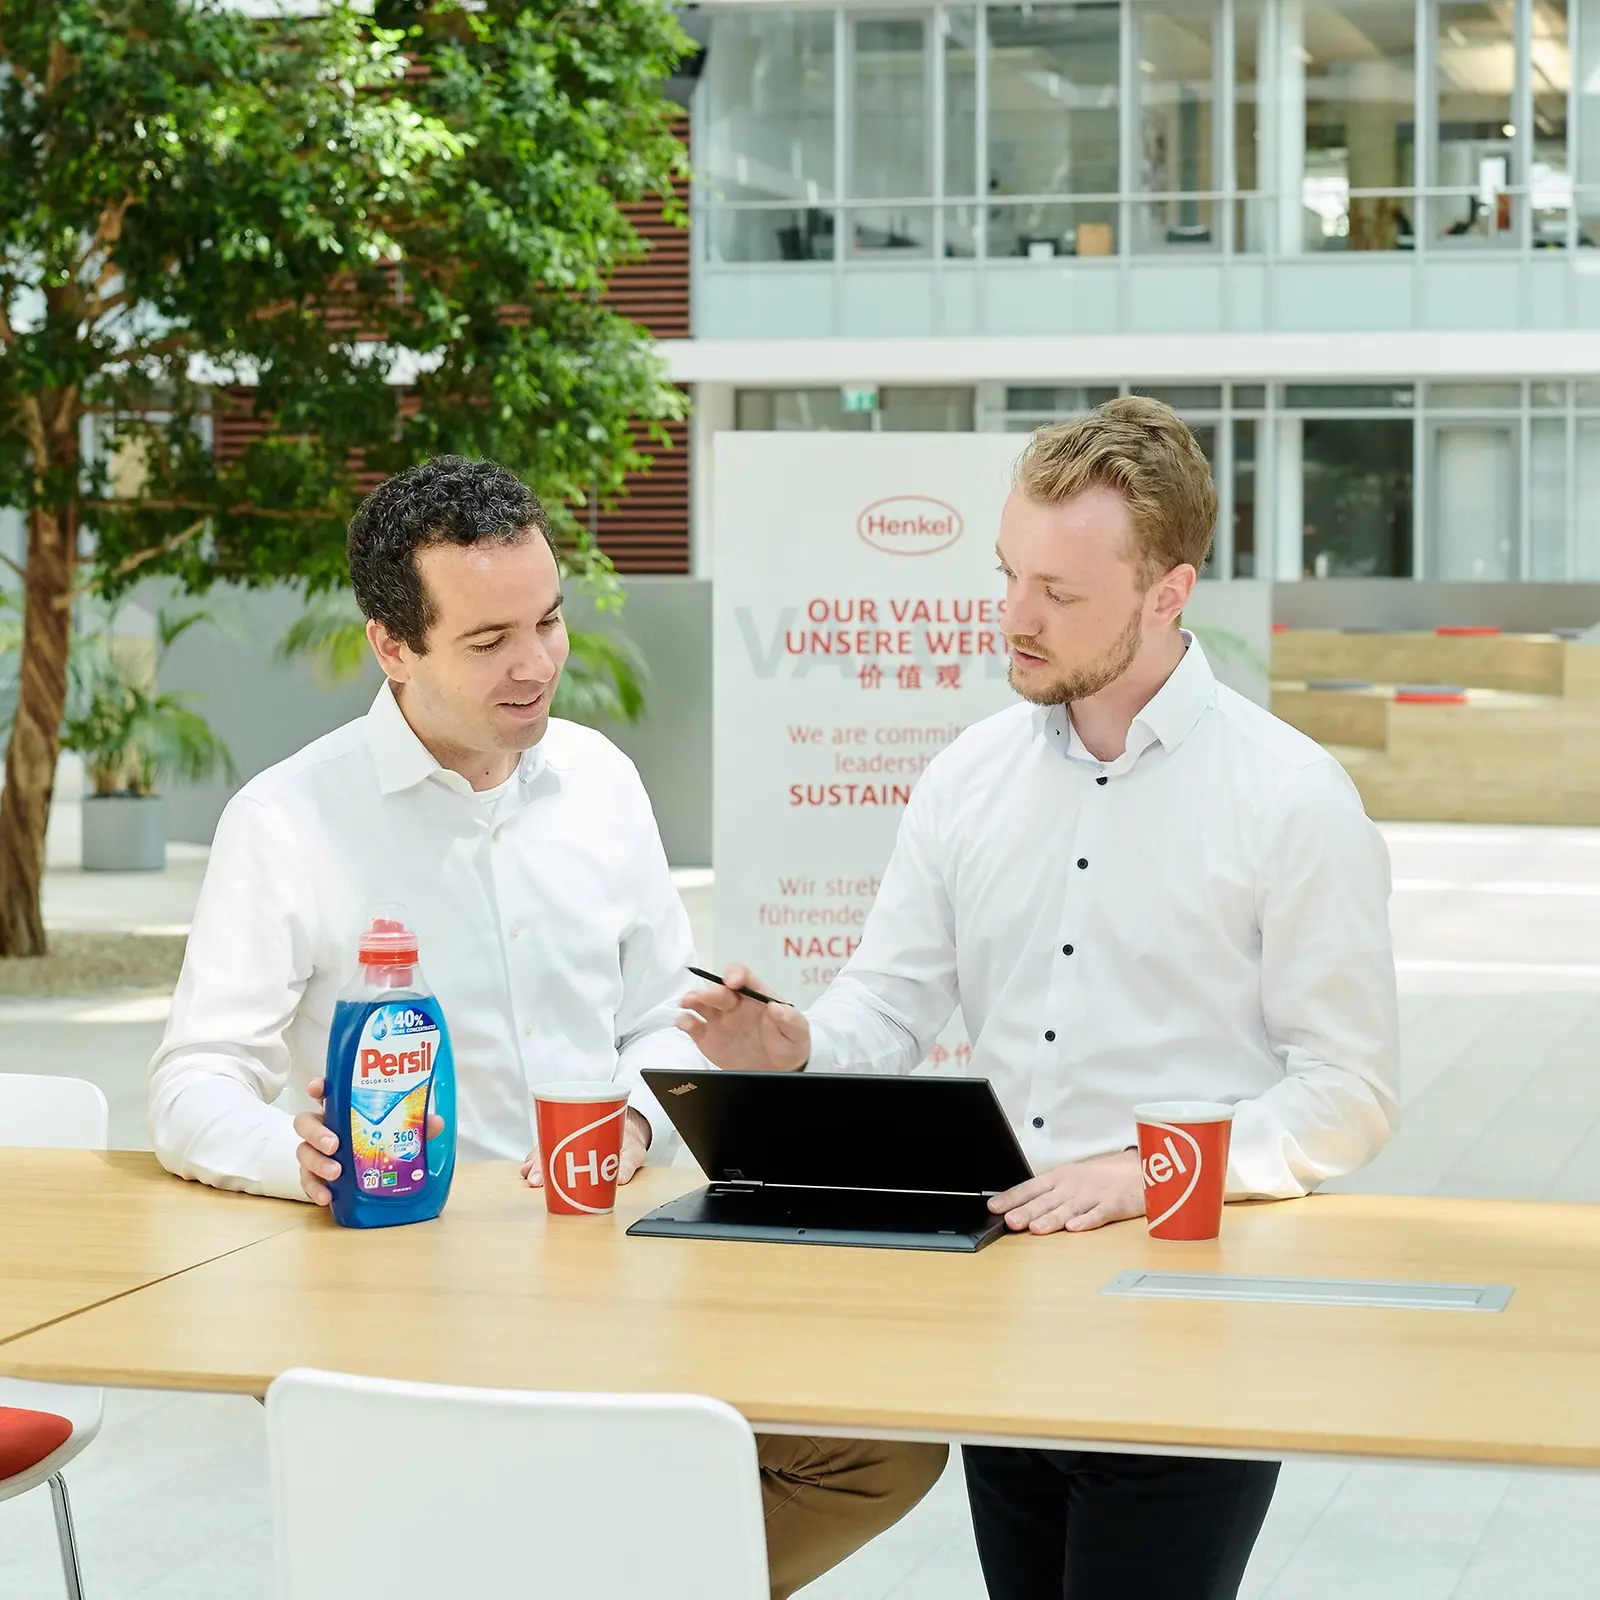 Dos hombres de pie en una mesa con una botella de Persil y una computadora portátil